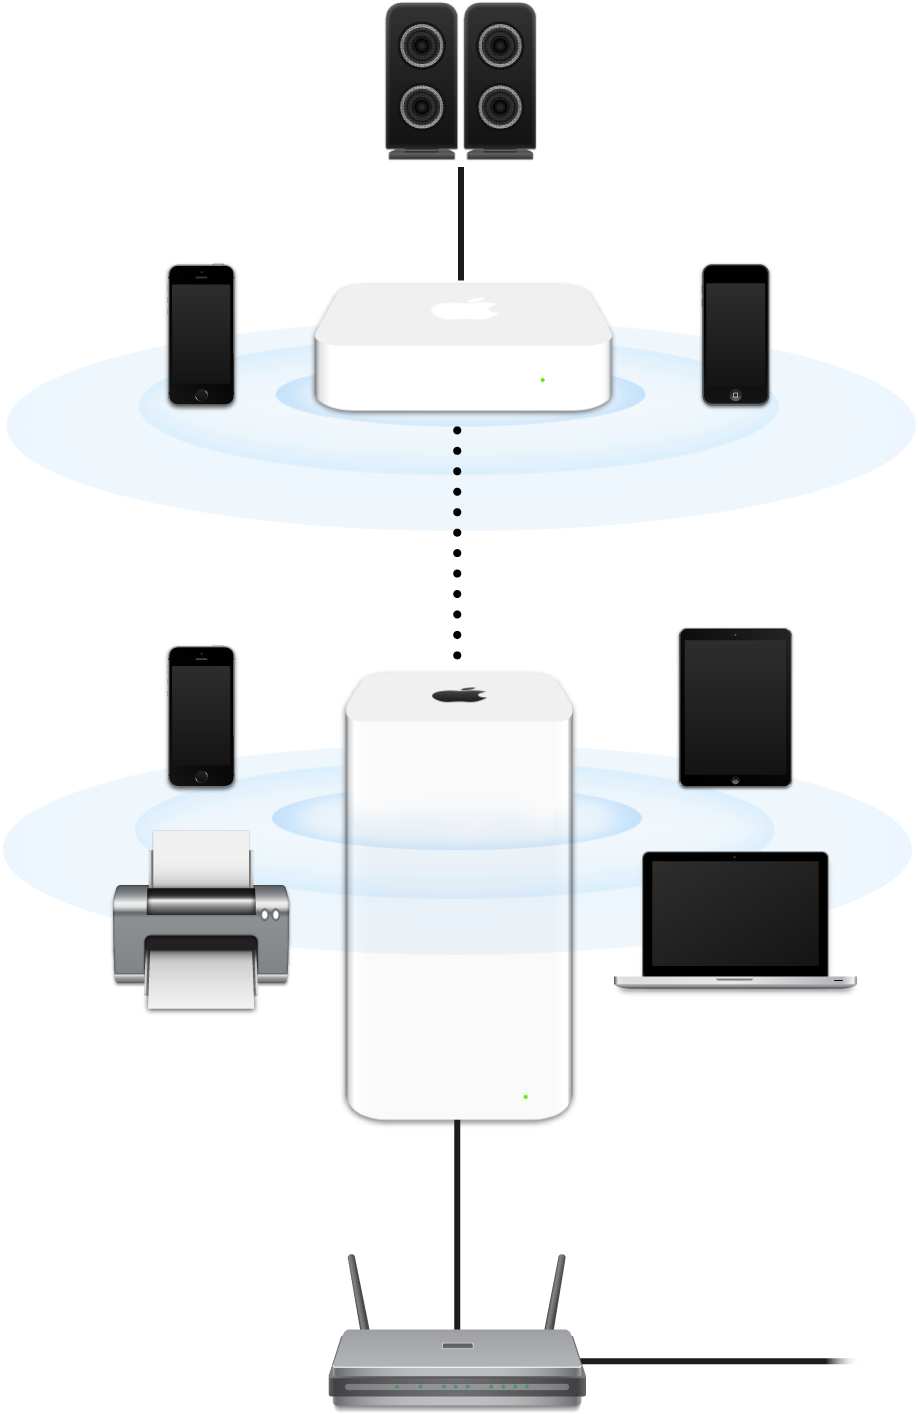 延伸的網絡，包括 AirPort Extreme 和 AirPort Express，連接數據機並傳輸到各種裝置。